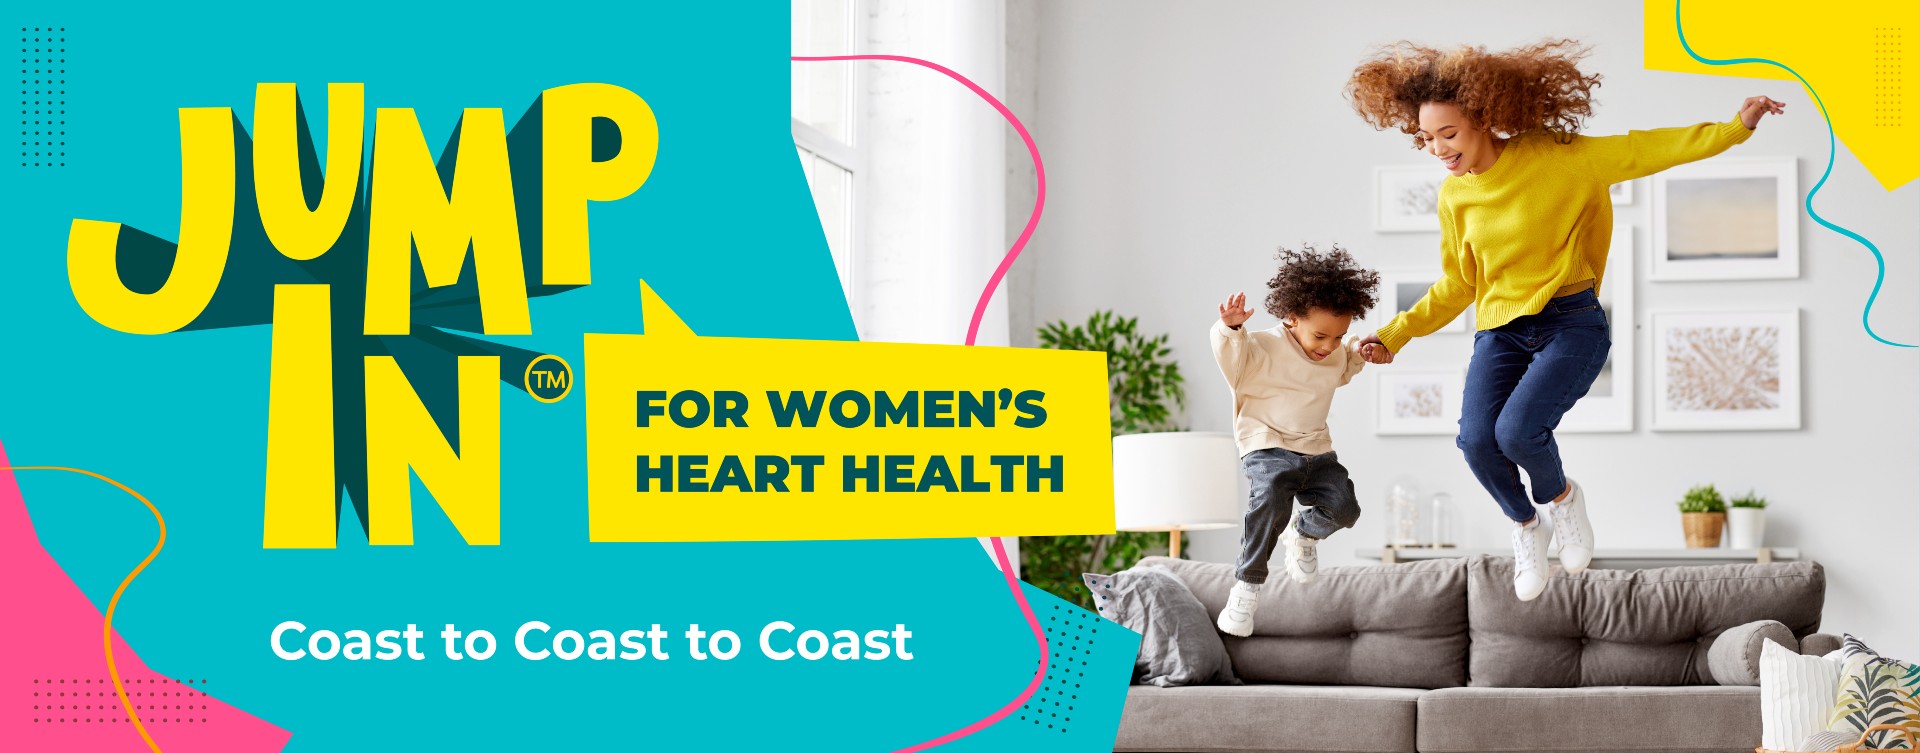 SAUTEZ DANS L’ACTION pour la santé cardiaque des femmes